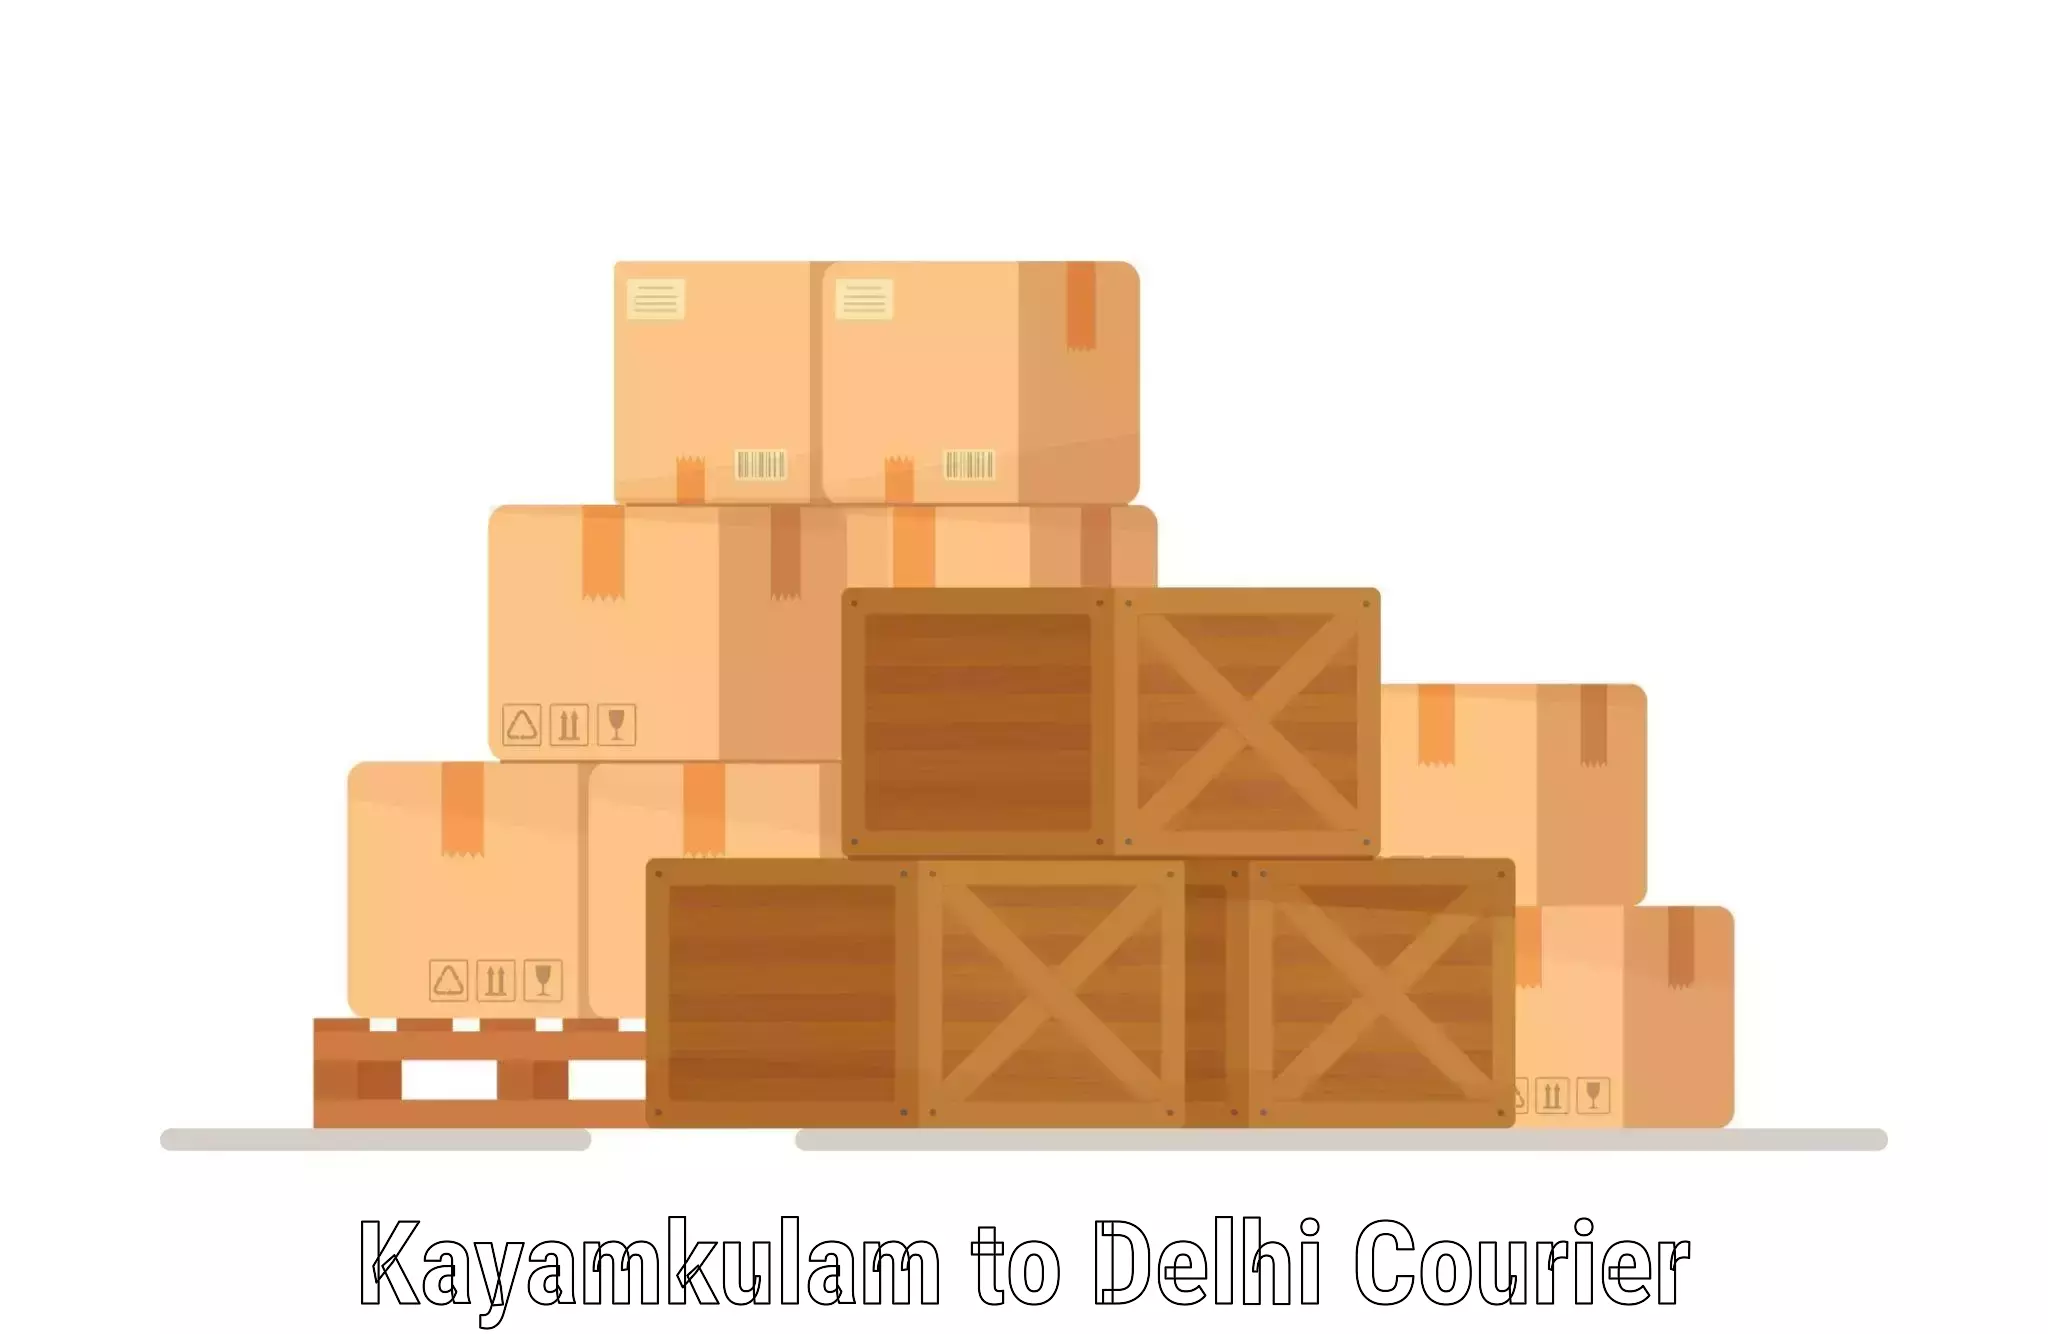 Smart courier technologies Kayamkulam to Ashok Vihar